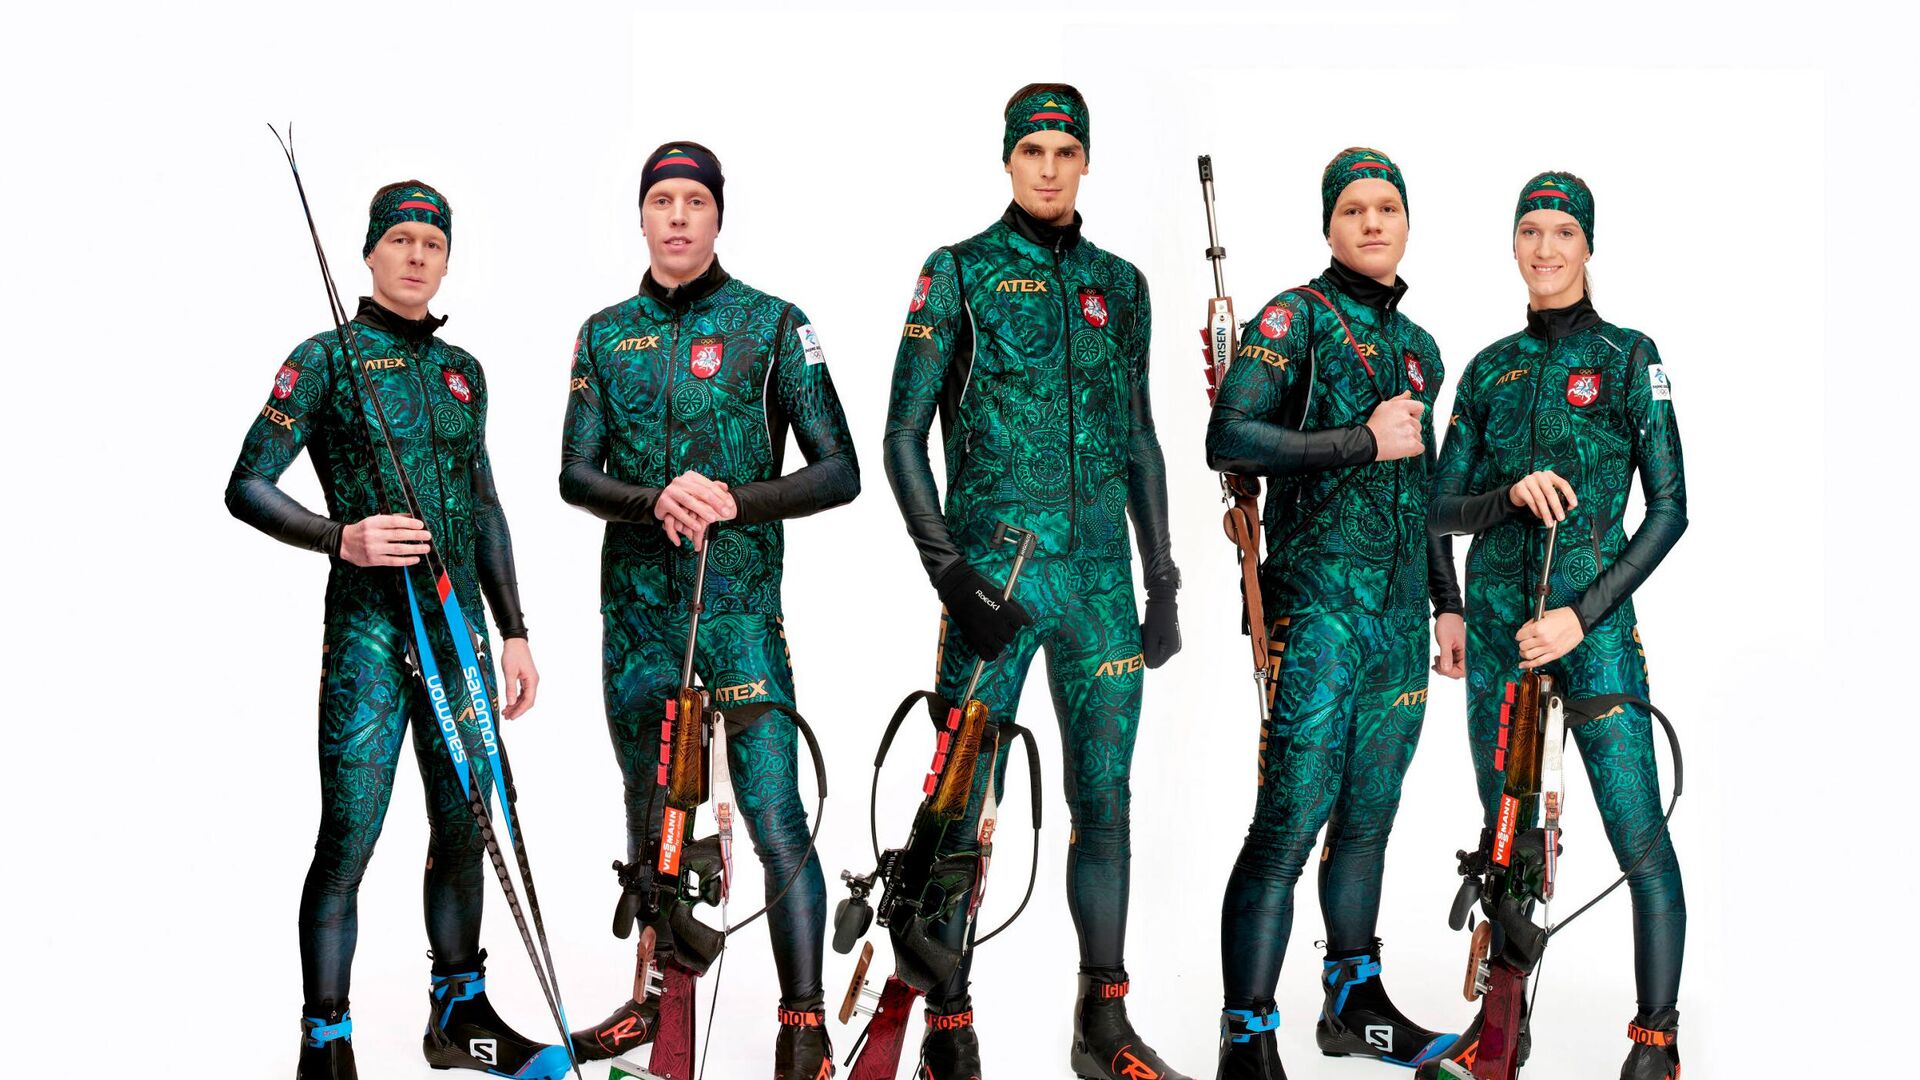 Литовские биатлонисты в форме для Олимпийских игр в Пекине - Sputnik Латвия, 1920, 27.01.2022